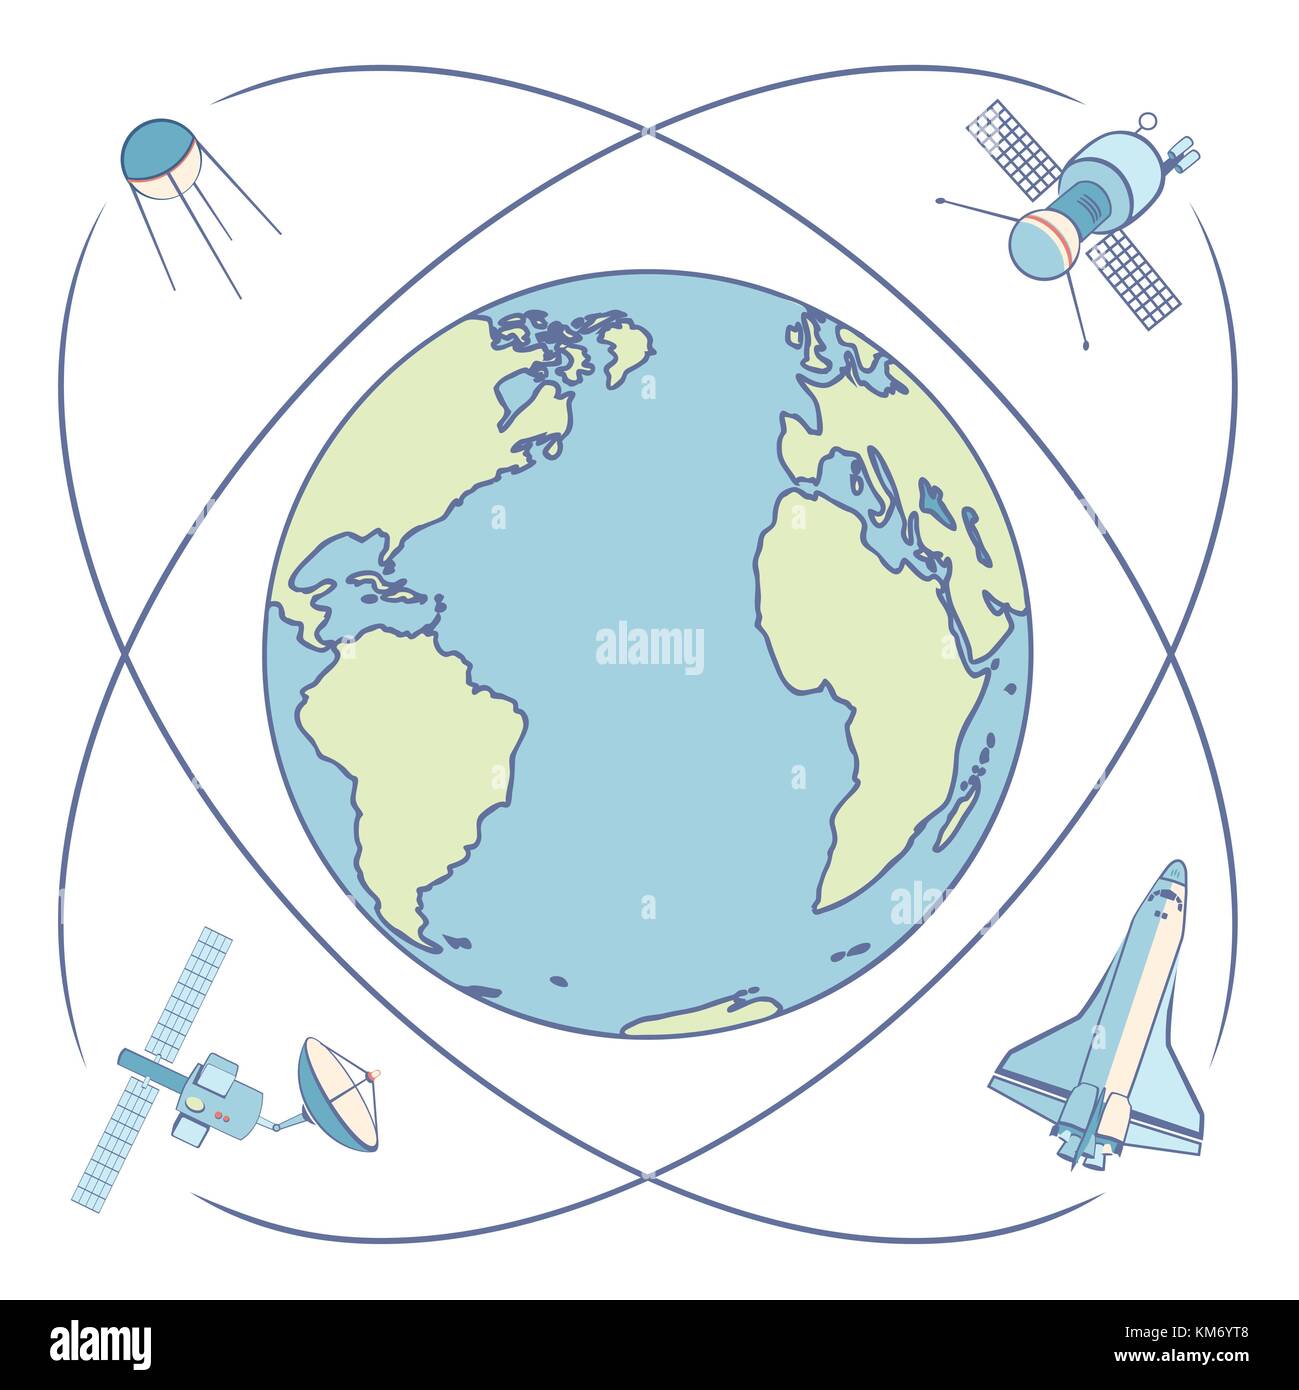 Die Erde im Weltall. Satelliten und Raumfahrzeuge Umlaufbahn um die Erde. Stock Vektor